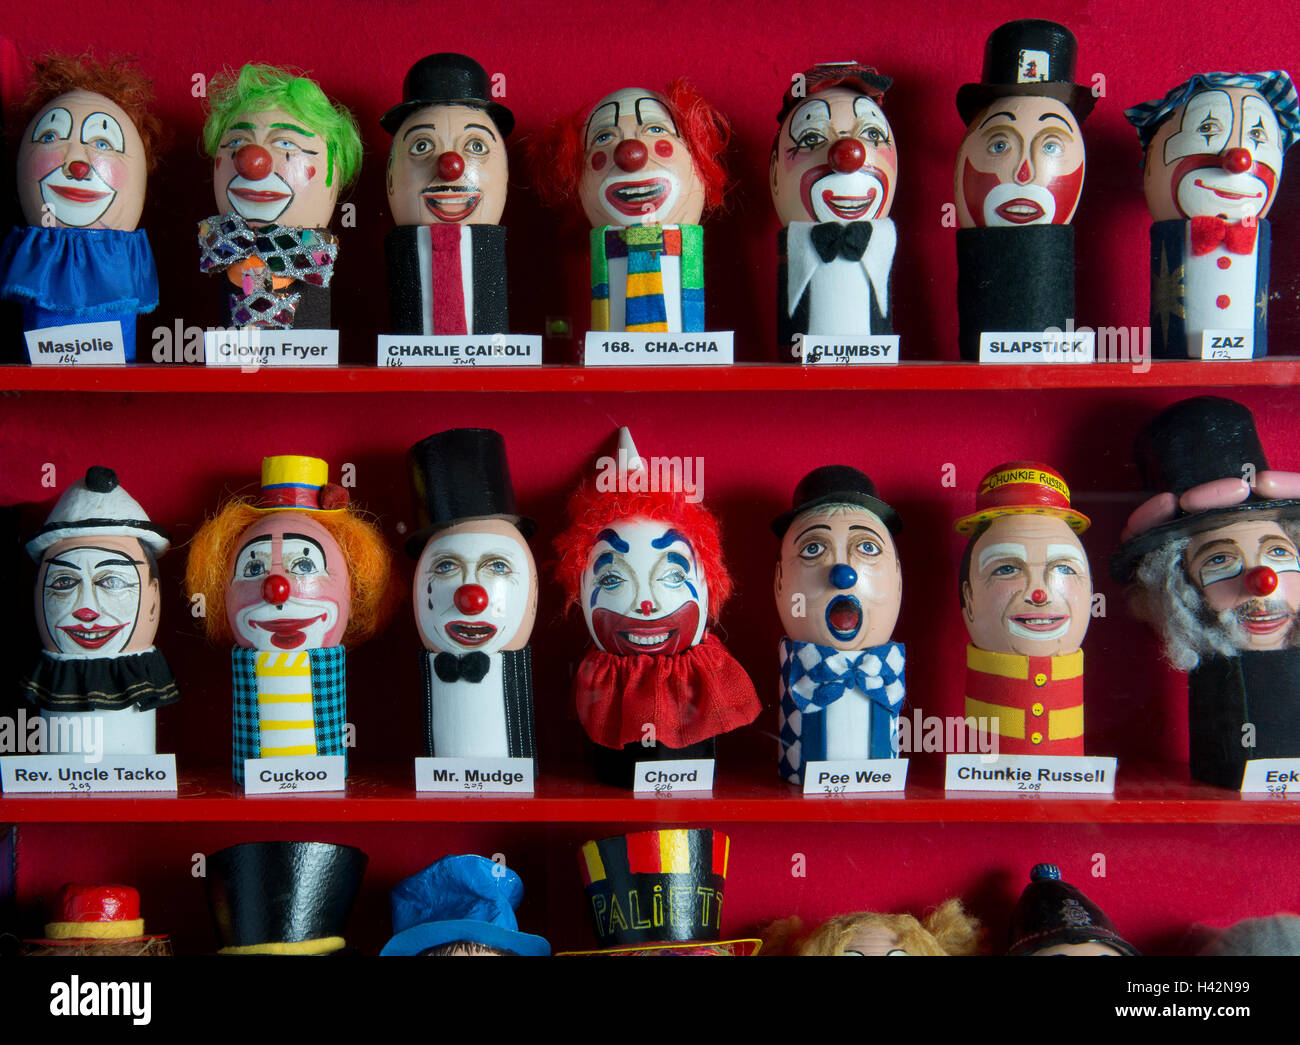 L'Uovo di registrarsi presso il clown Museum di Wookey Hole,dove tutti i professionisti del clown hanno per registrare il loro trucco, capelli, costume.a Foto Stock